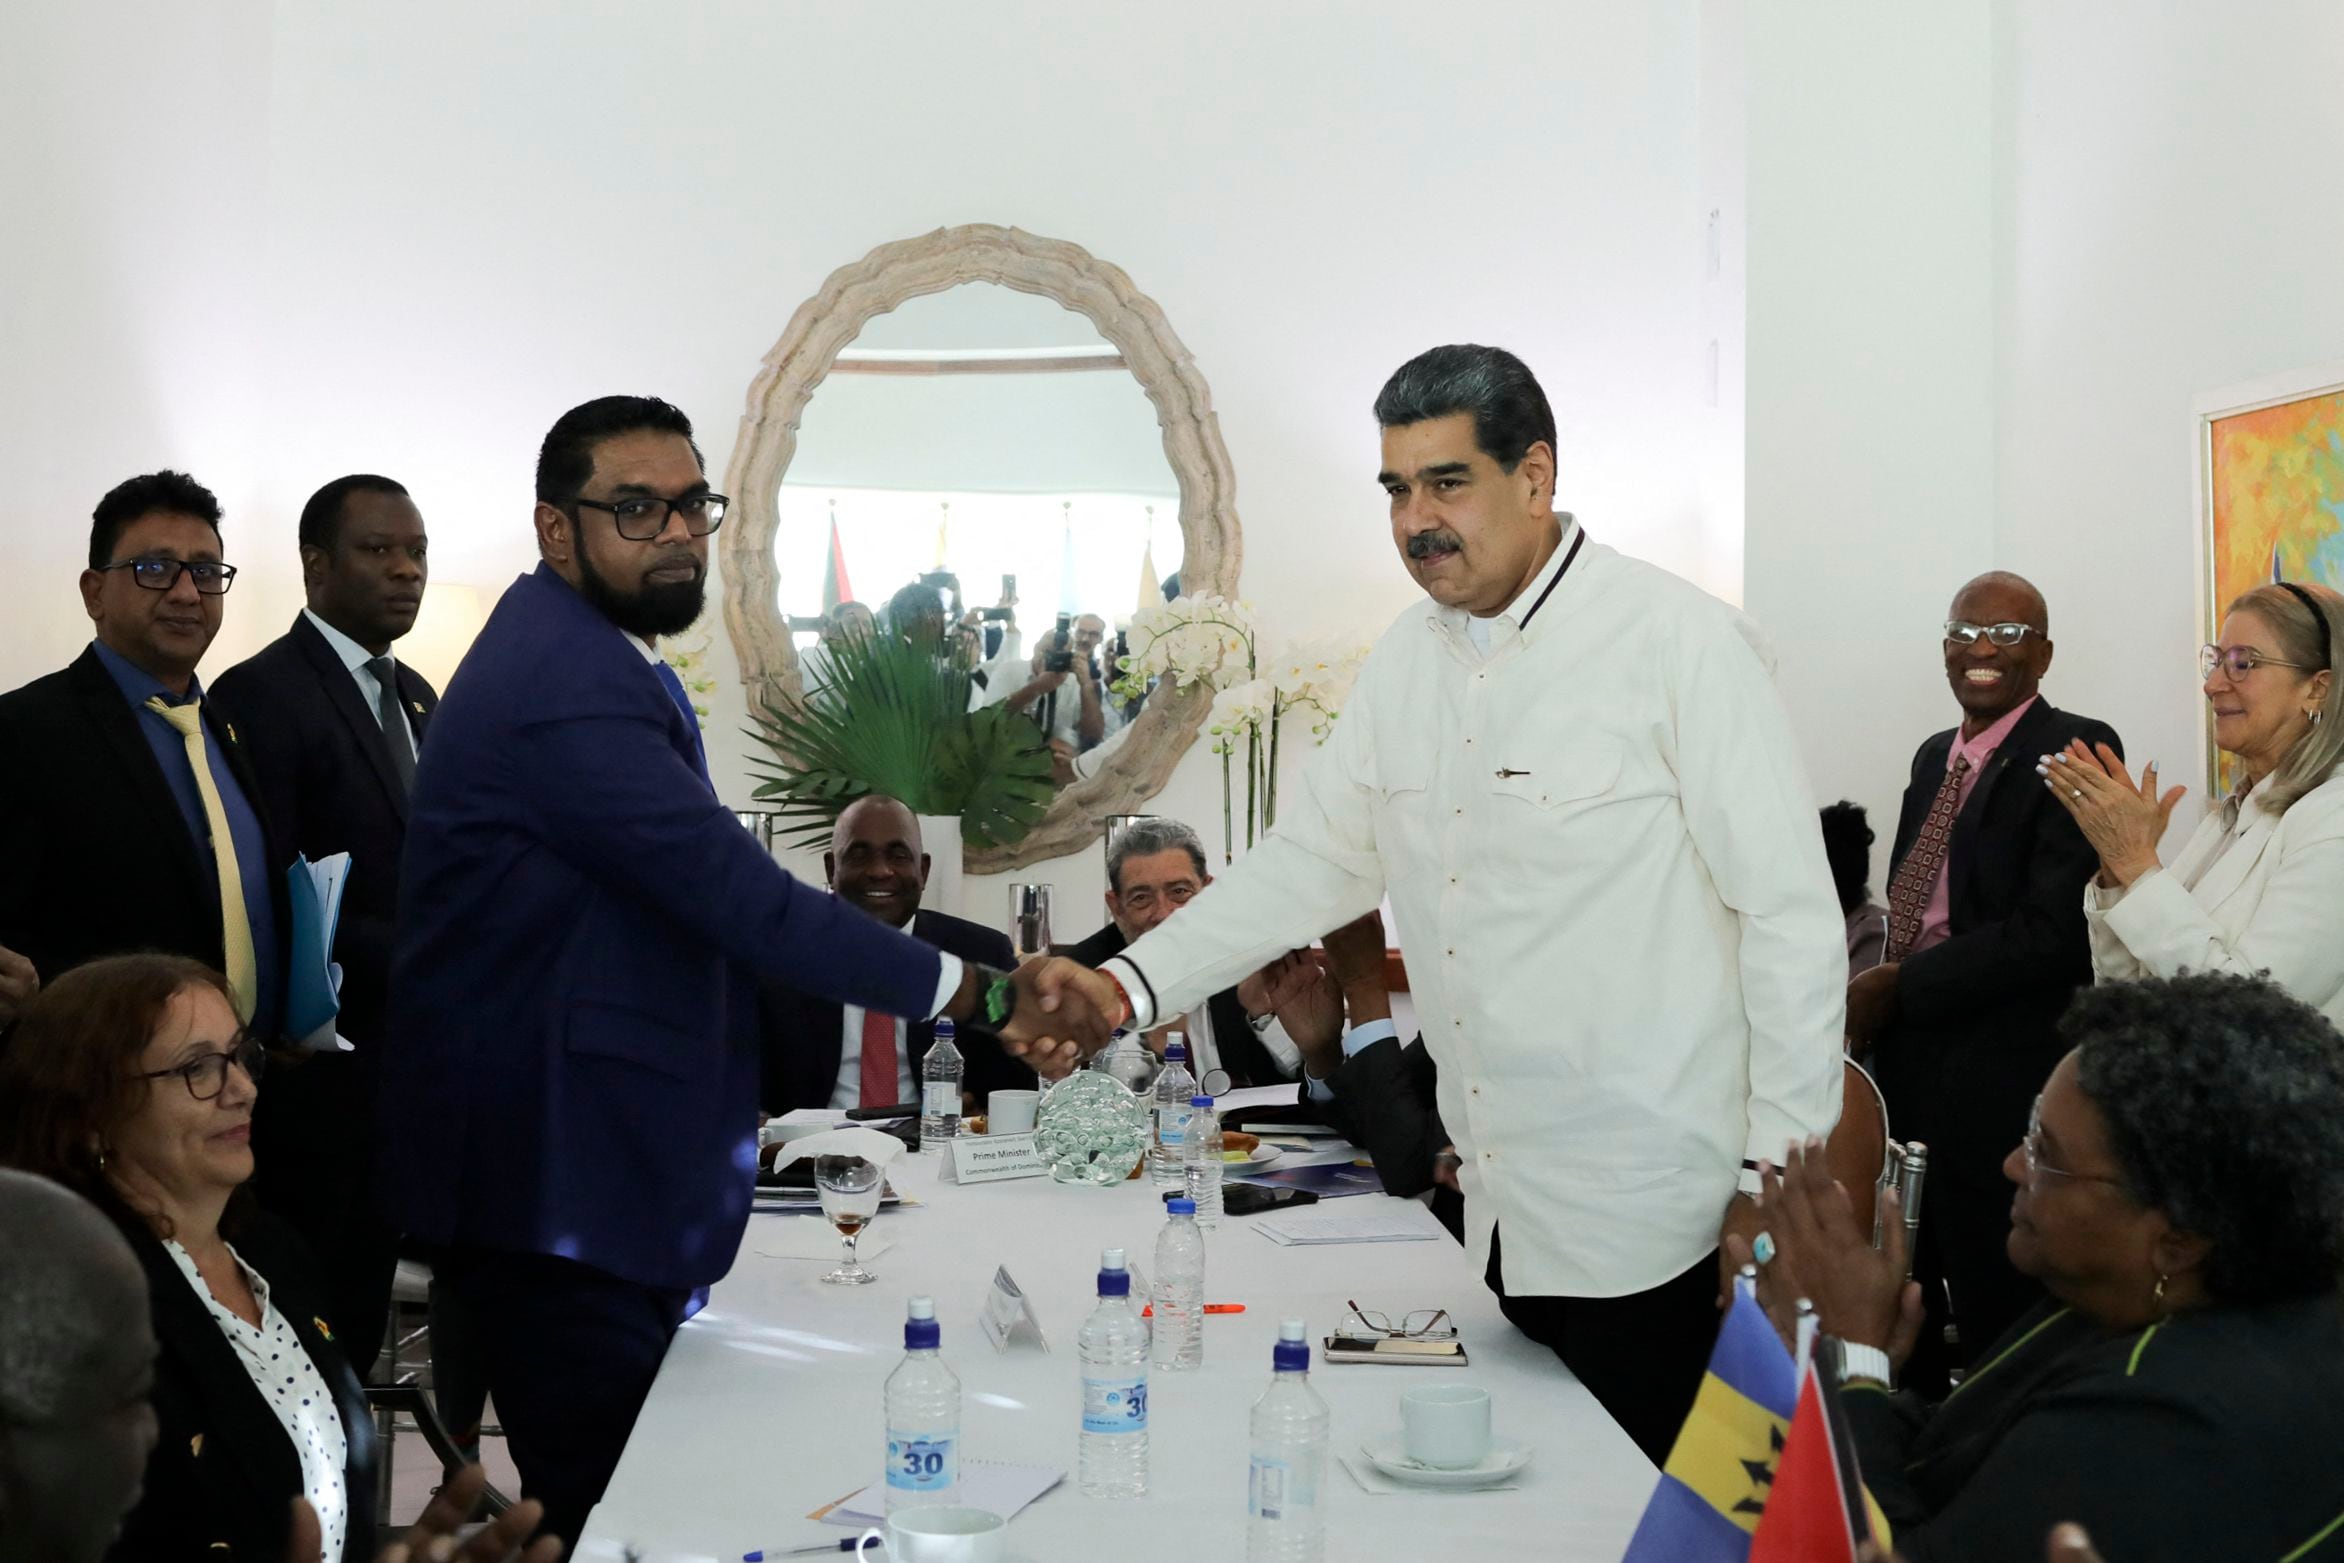 El presidente de Venezuela, Nicolás Maduro, y el presidente de Guyana, Irfaan Ali, prometieron en diciembre que no utilizarían la fuerza para resolver el conflicto del Esequibo